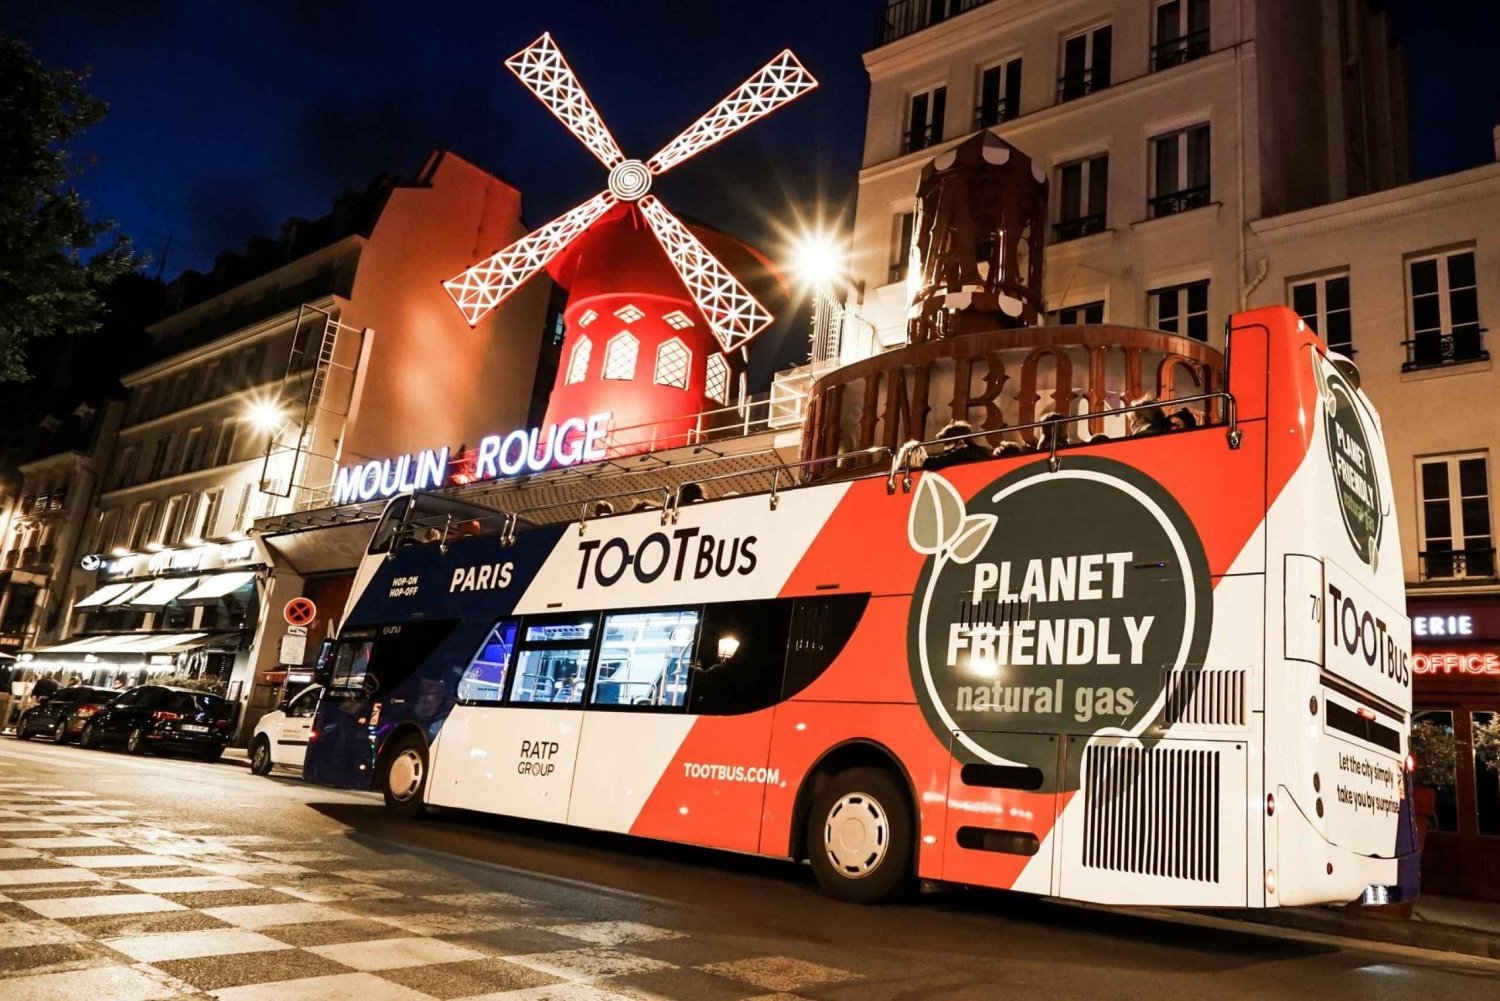 Tootbus Paris: Games 2024 Night Tour with Macaron Tasting